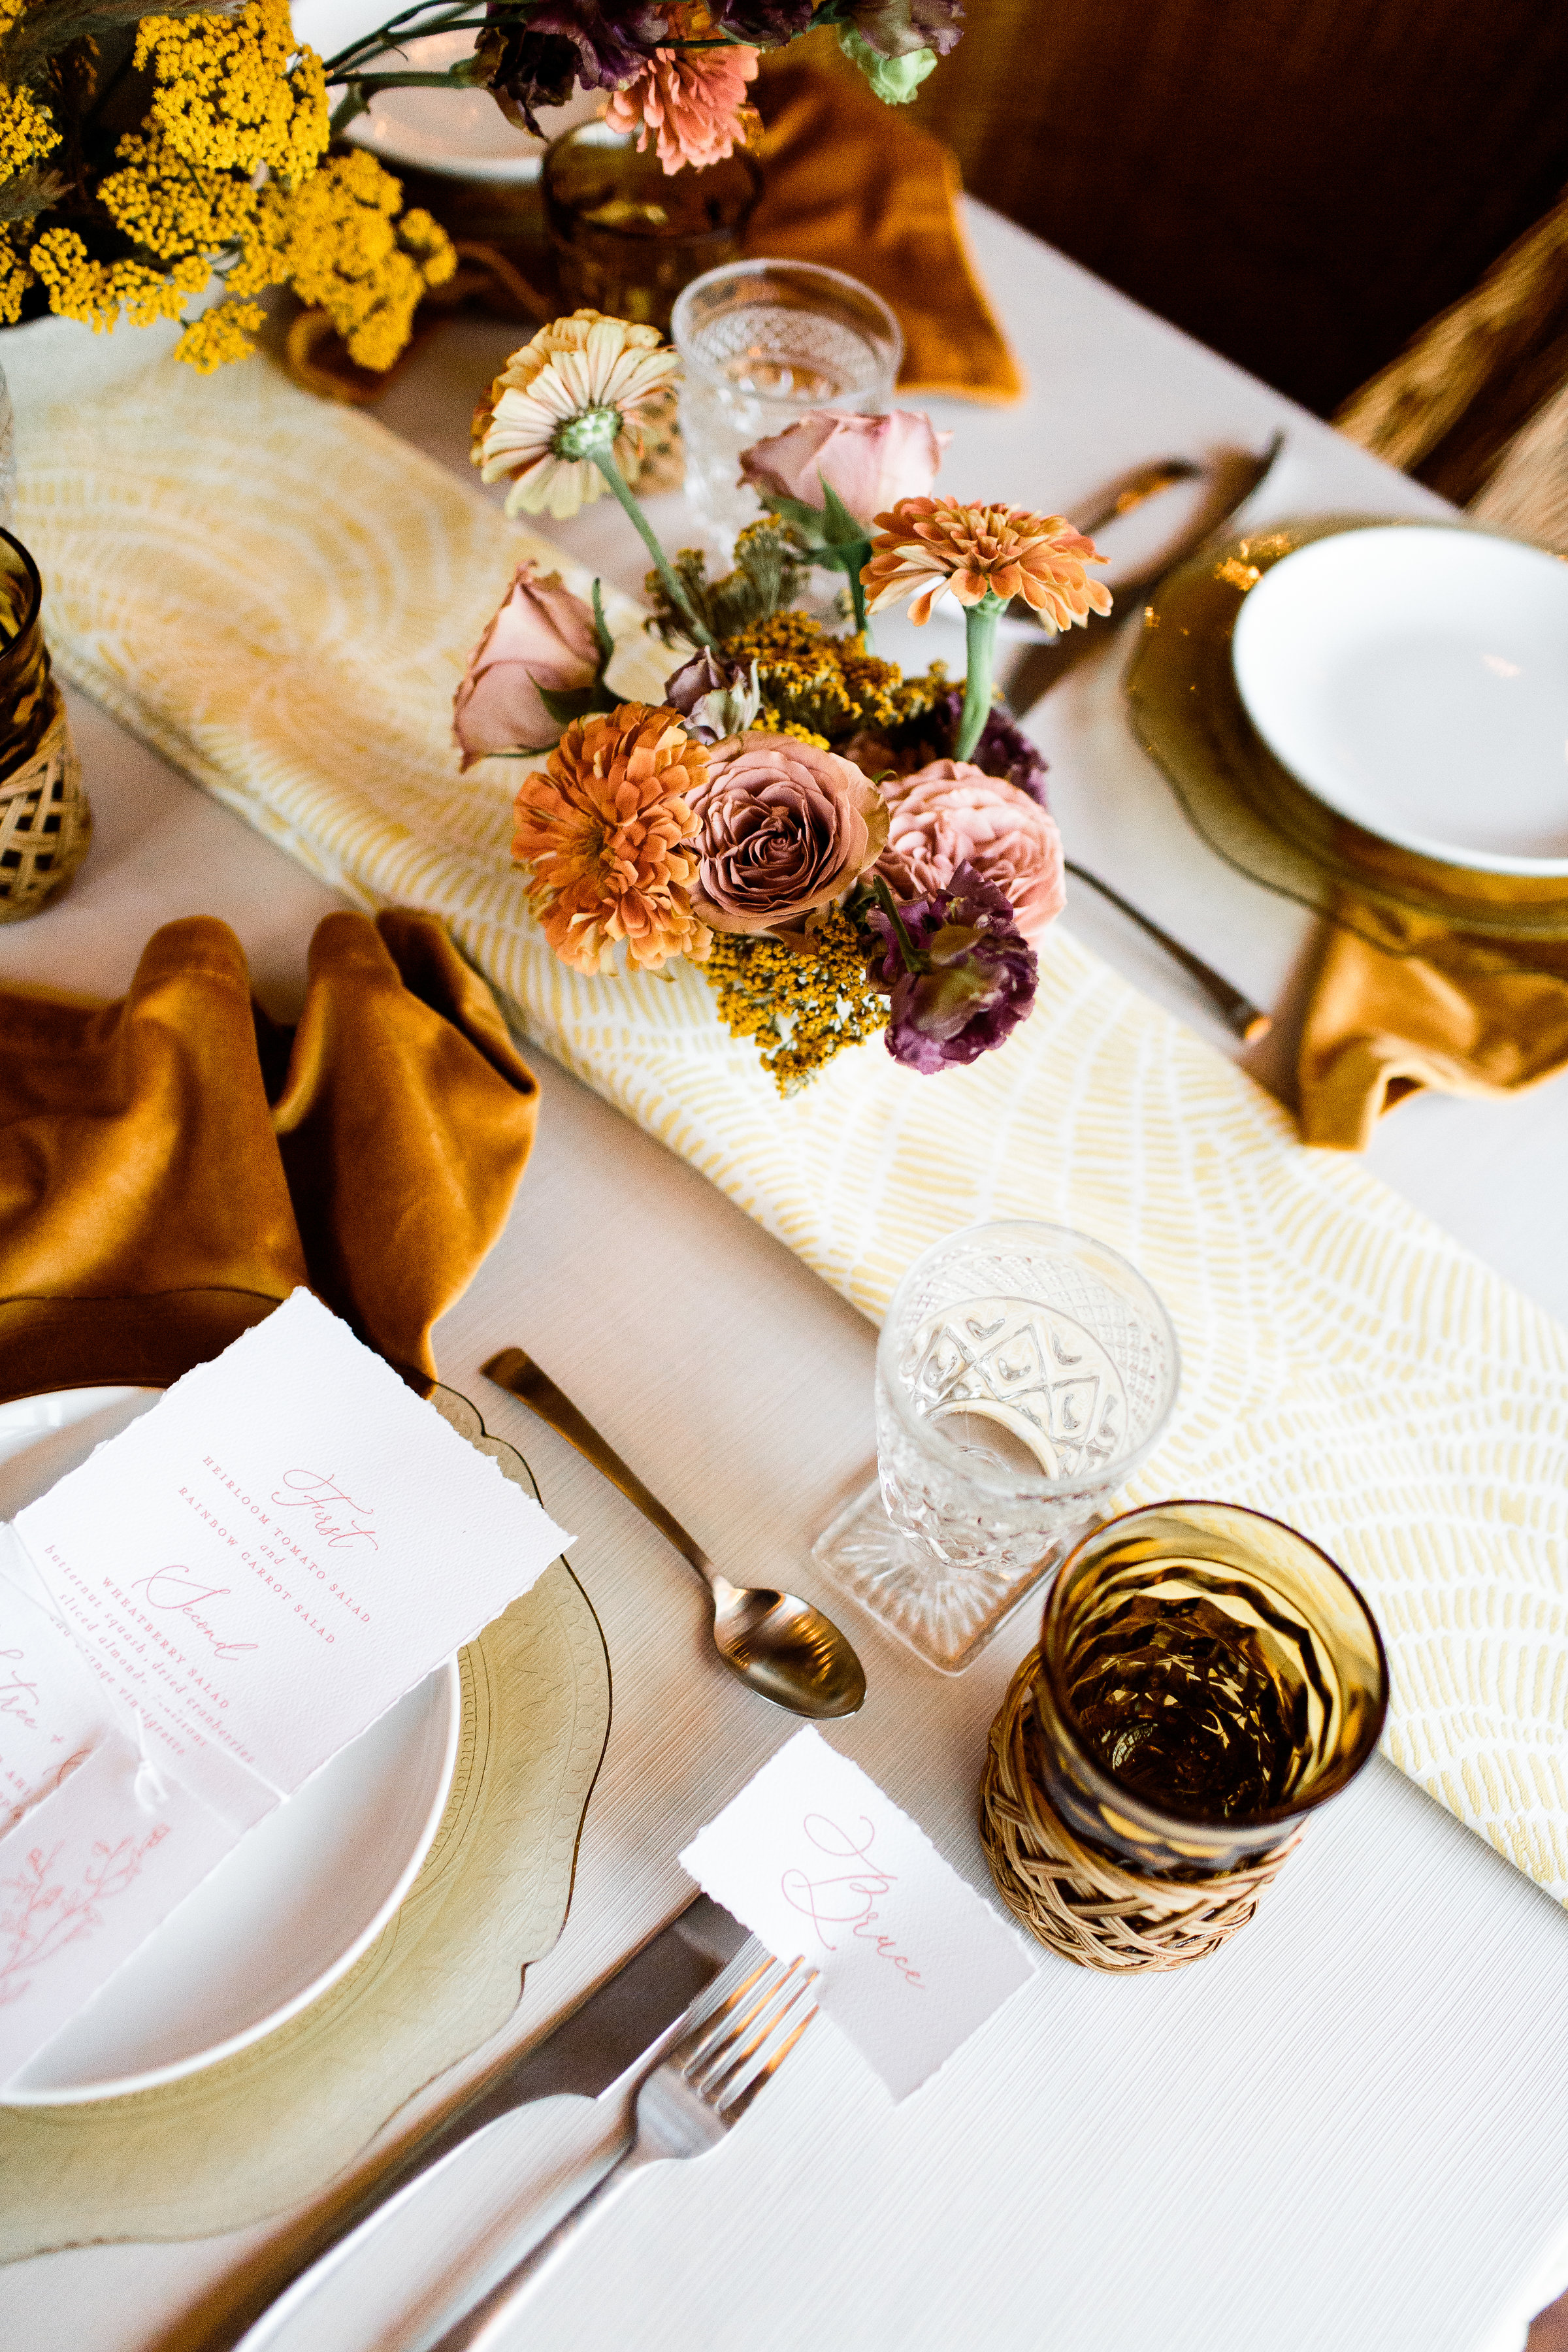 BBJ linen, velvet turmeric napkins, yellow lemon wheel runner and boho style blended with modern - Pearl Weddings & Events